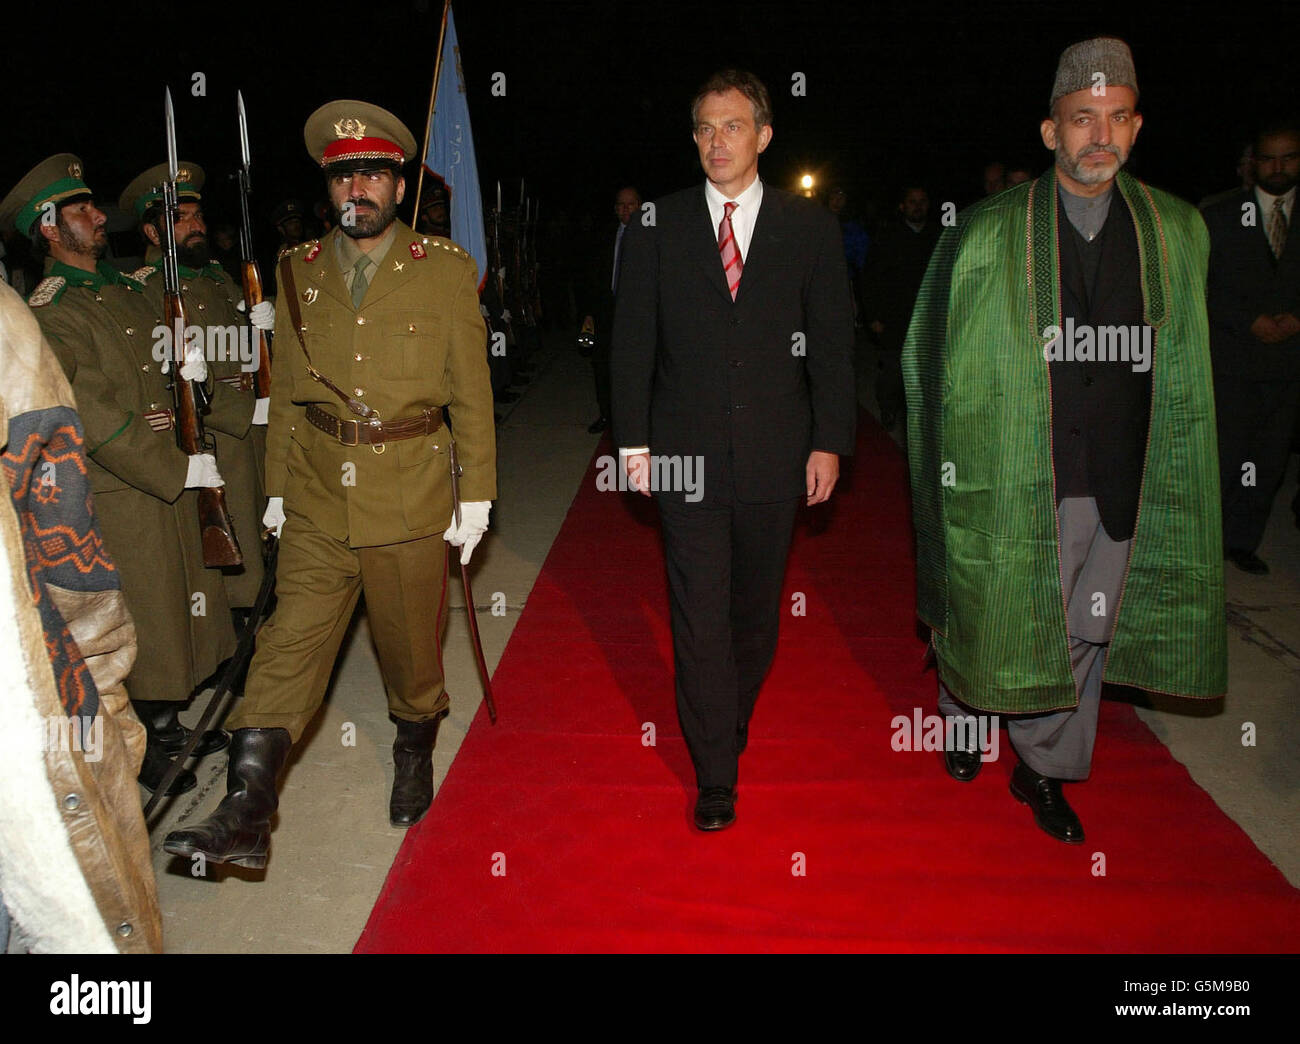 Der britische Premierminister Tony Blair (L) tritt bei seiner Ankunft auf dem Luftstützpunkt Bagram mit dem afghanischen Interimsführer Hamid Karzai (R) zusammen. Blair flog am Montag nach Afghanistan und wurde damit der erste westliche Regierungschef, der das Land seit dem Sturz des Taliban-Regimes besuchte. Stockfoto